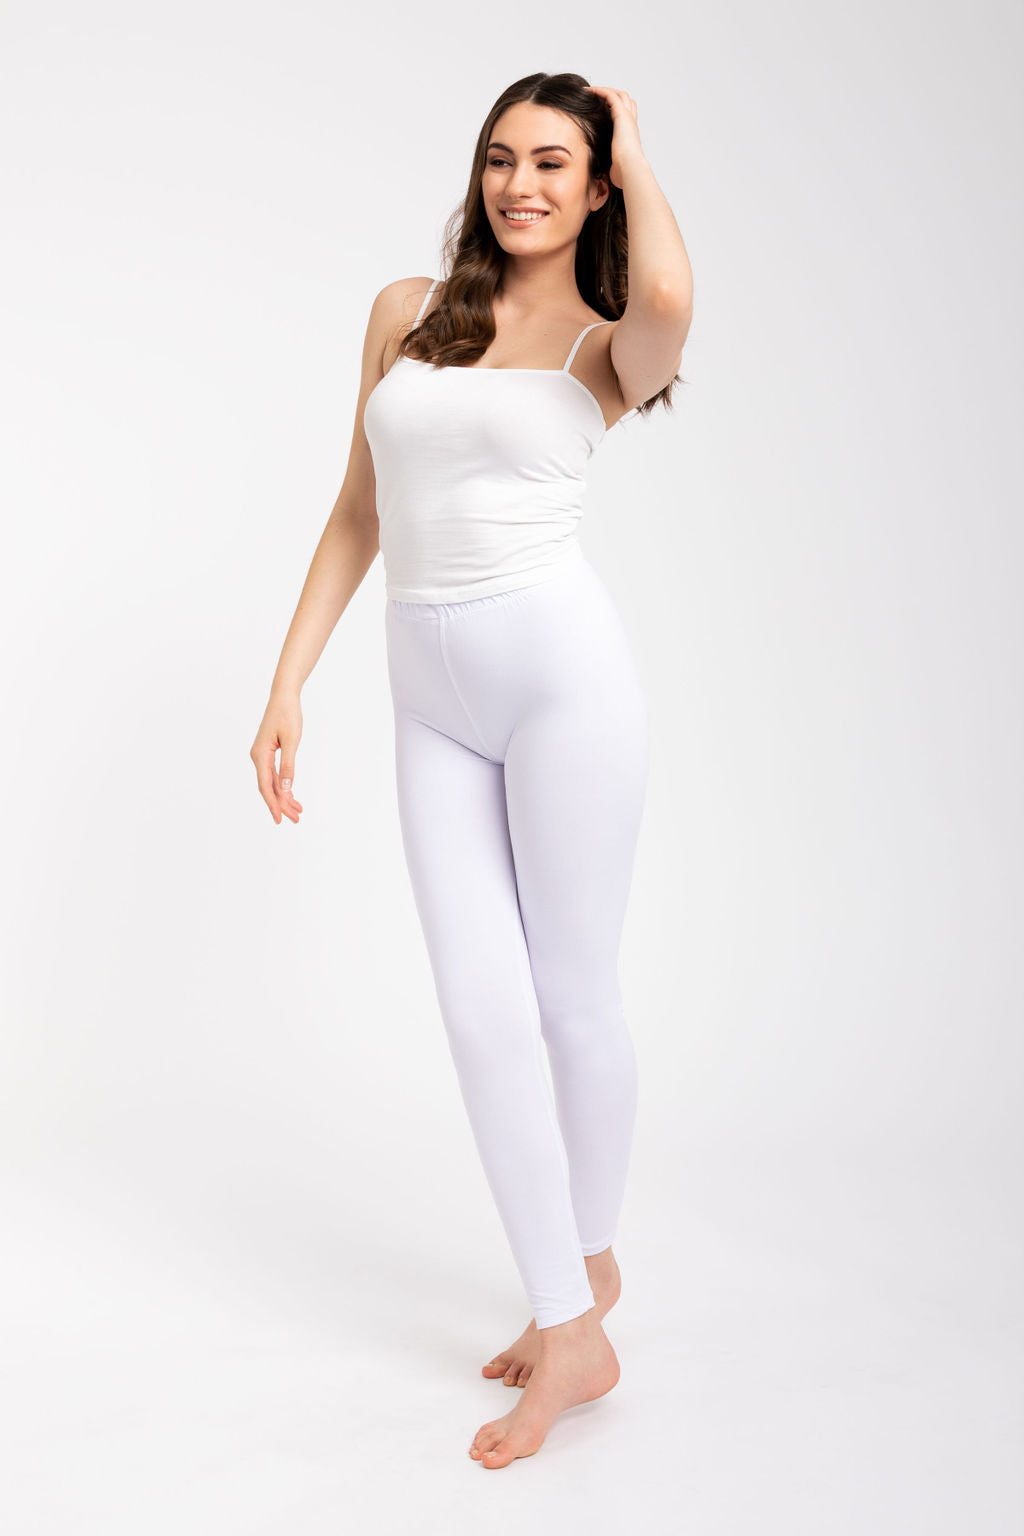 Srishti - Women - Leggings - Color White - 007 - Size 28